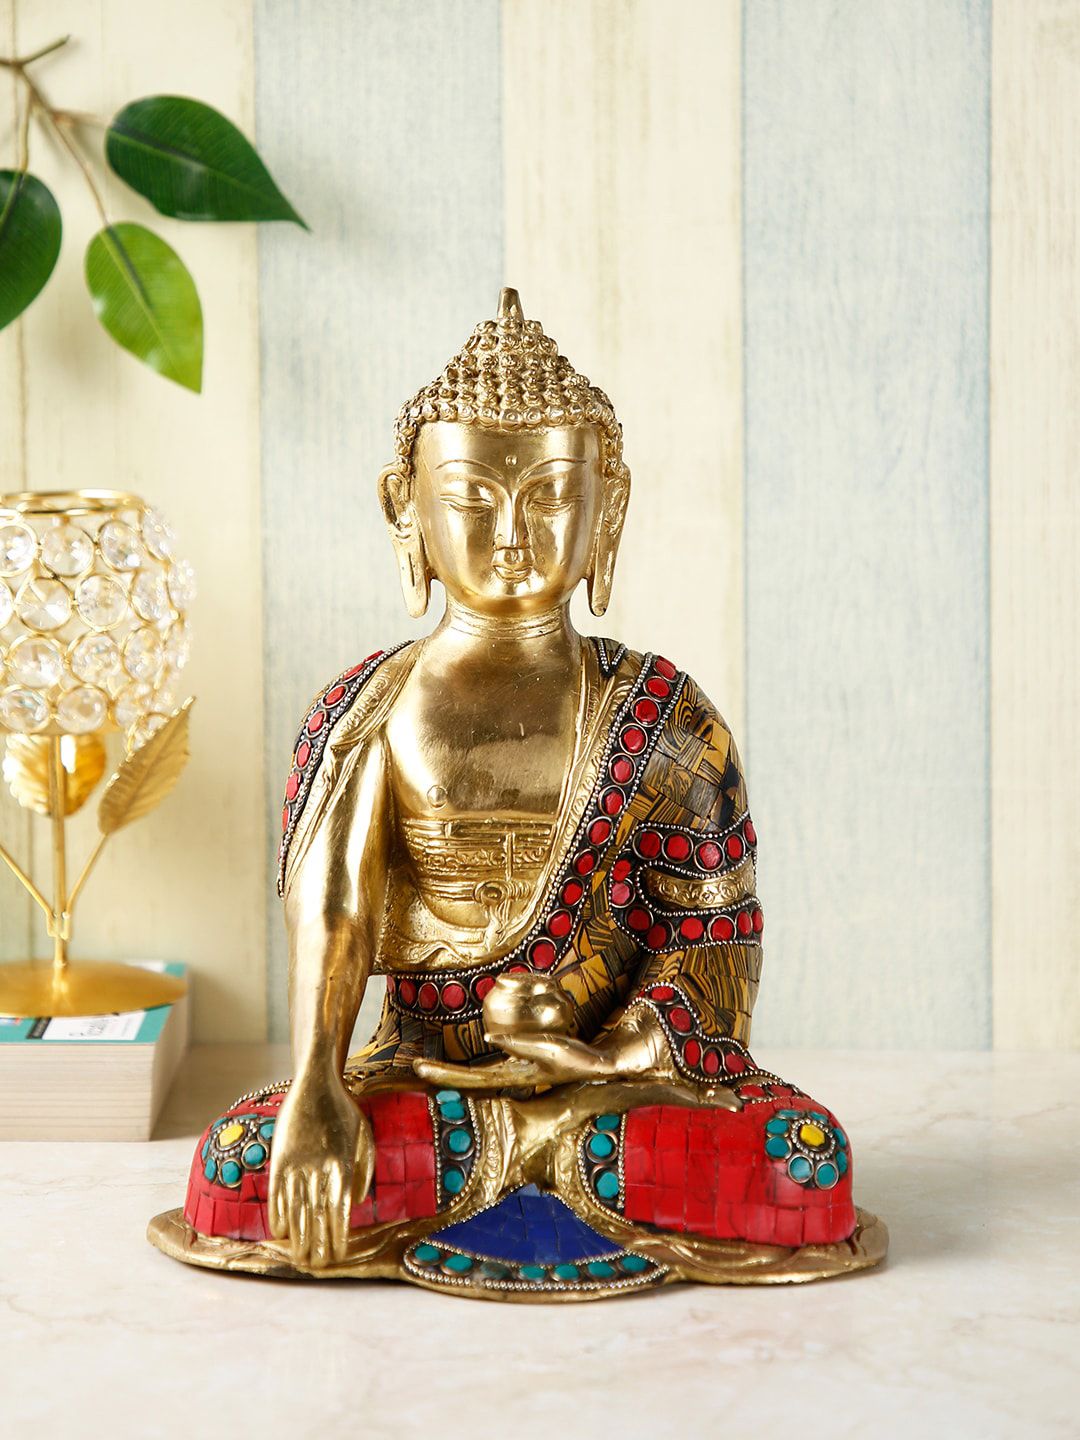 CraftVatika Gold-Toned & Red Hand-Painted Buddha Idol Price in India